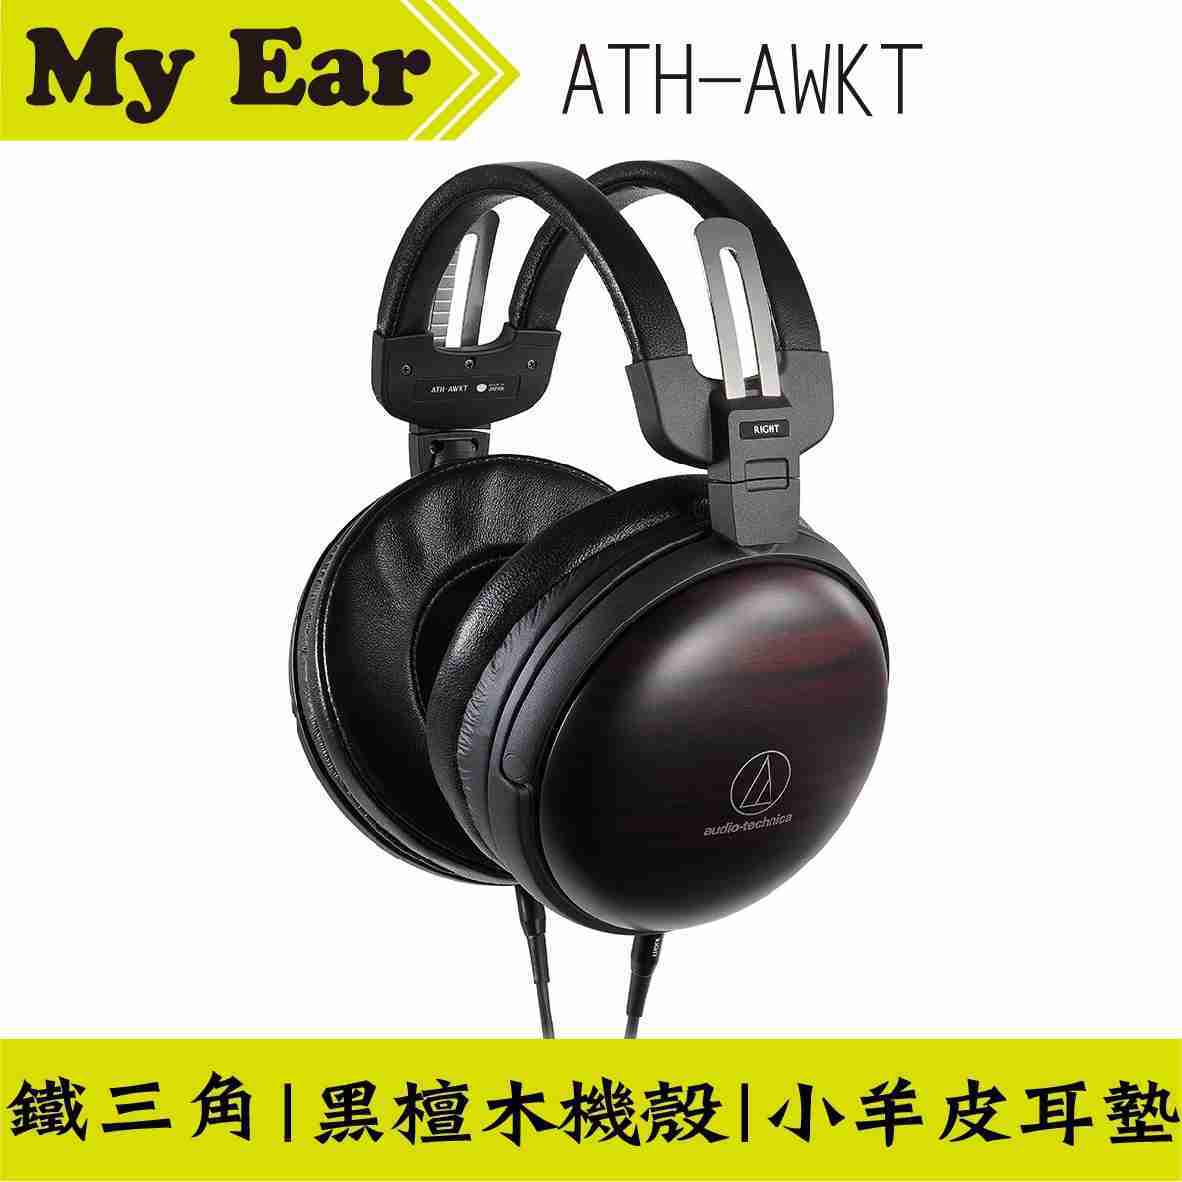 鐵三角 ATH-AWKT 木殼耳罩式耳機 縞黑檀木 日本製造 | My Ear 耳機專門店